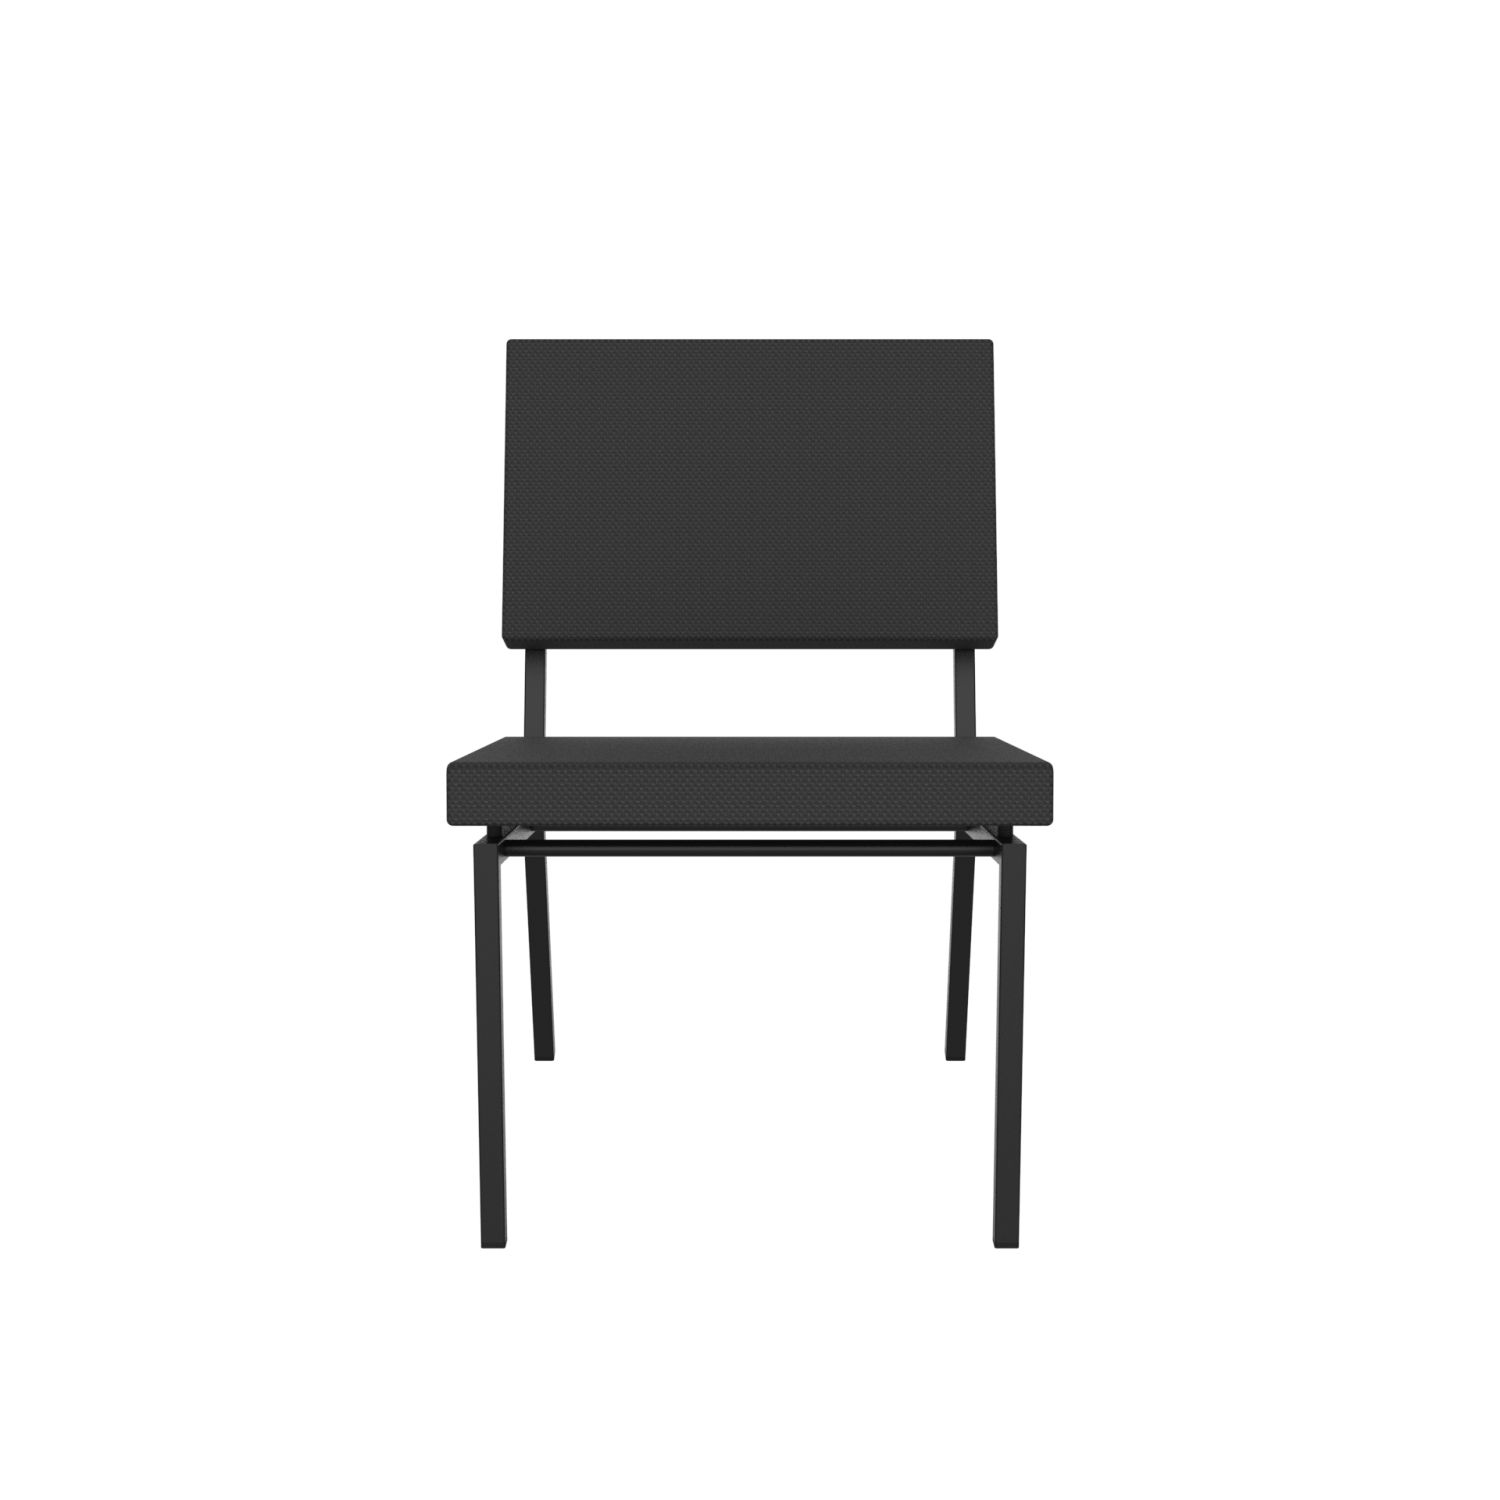 lensvelt gerrit veenendaal low chair without armrests havana black 090 price level 0 black frame ral9005 hard leg ends